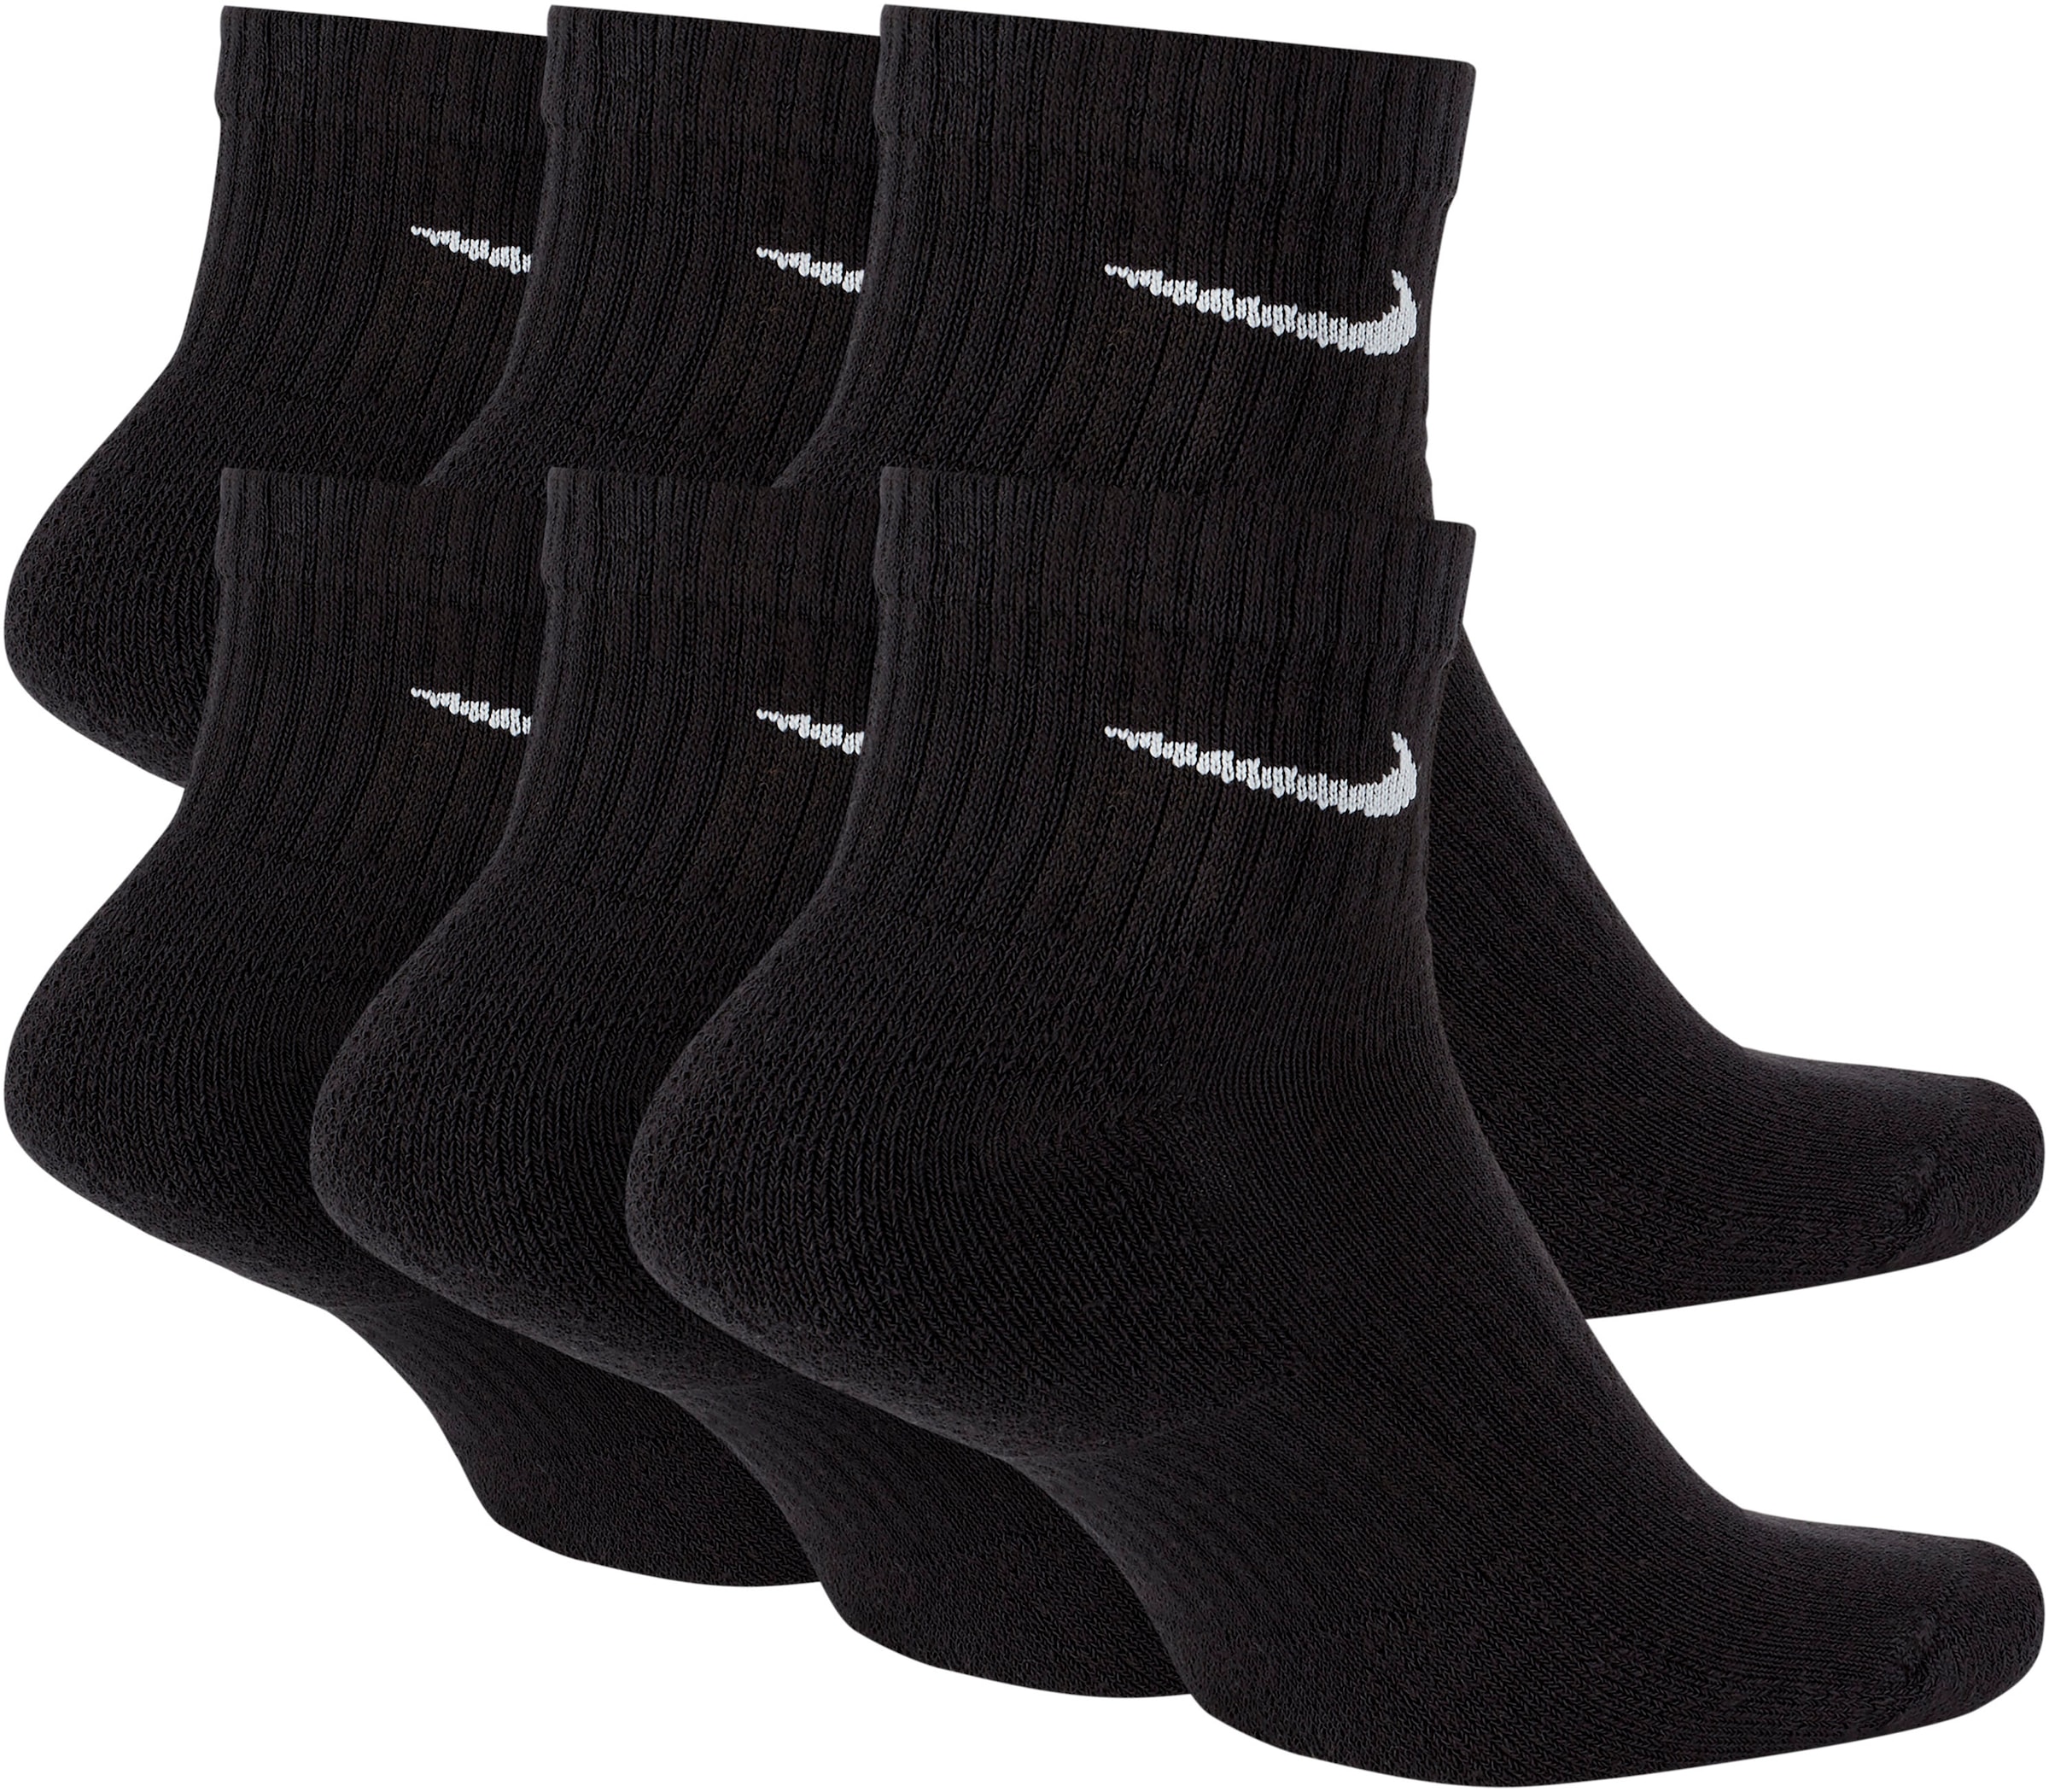 | Training »Everyday Ankle Cushioned Sportsocken Socks kaufen (Pairs)« Nike BAUR